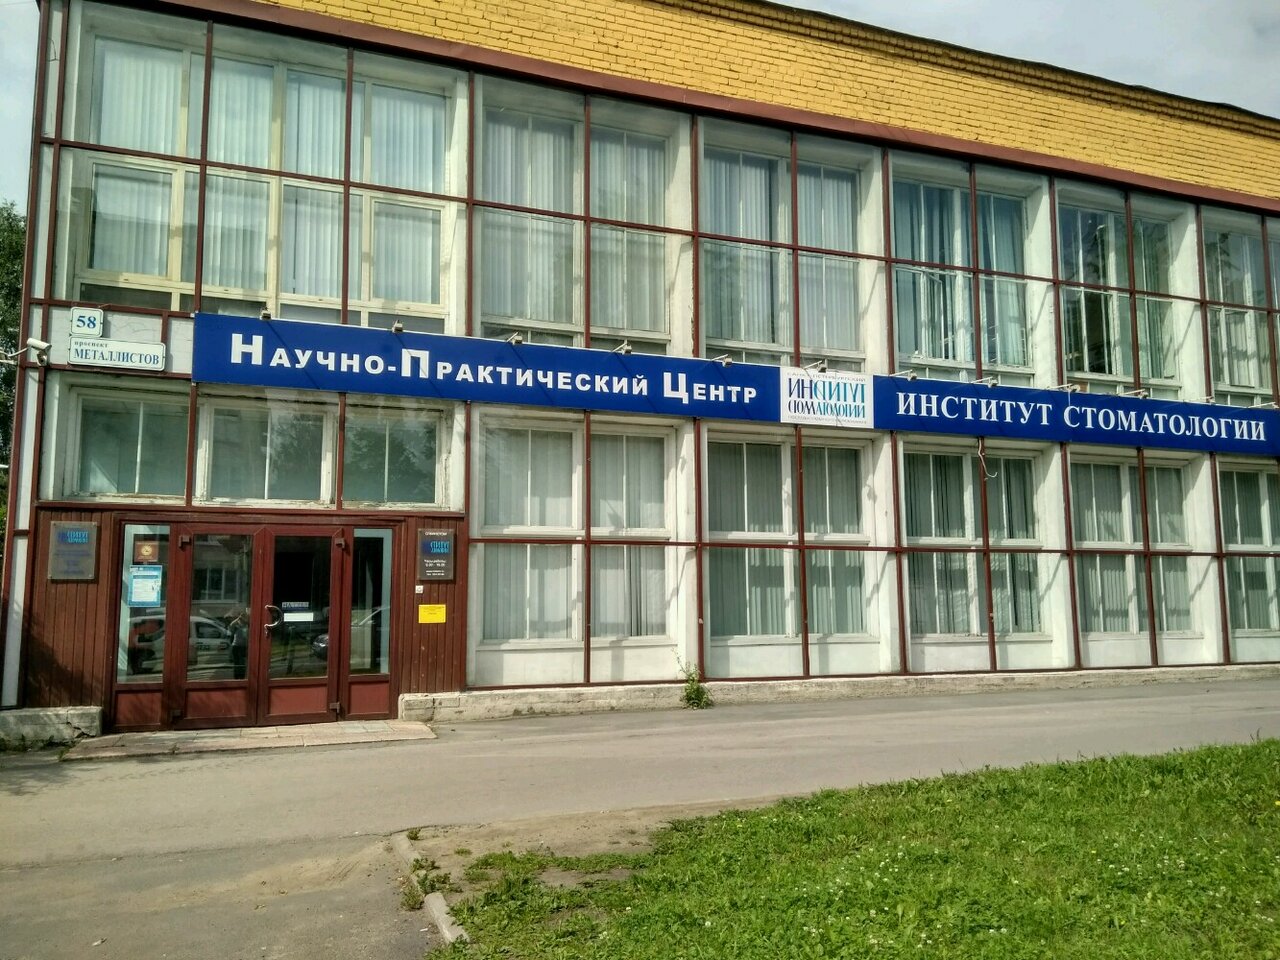 Стоматологическая клиника Неодент, Казань, пр. Металлистов, 58